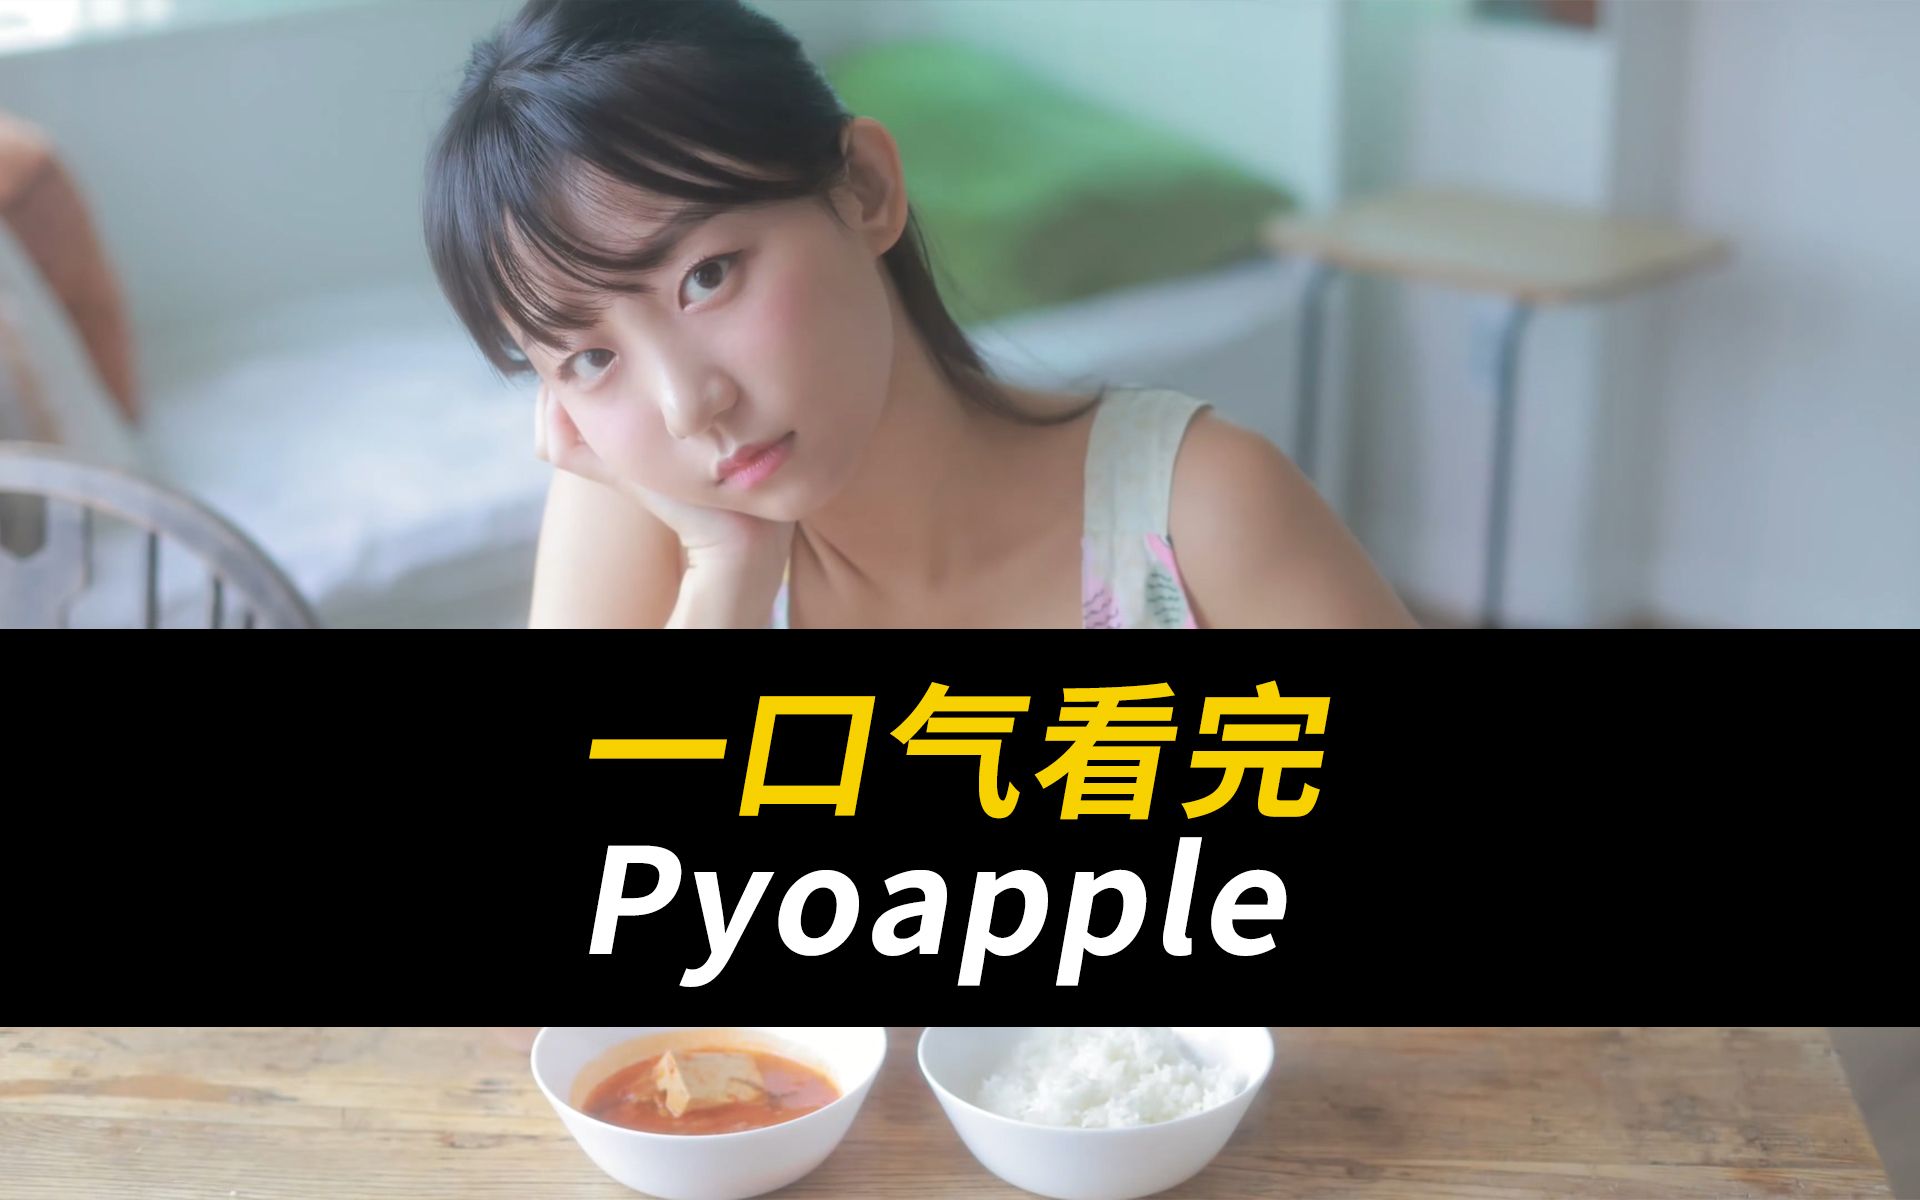 韩国pyoapple资料图片